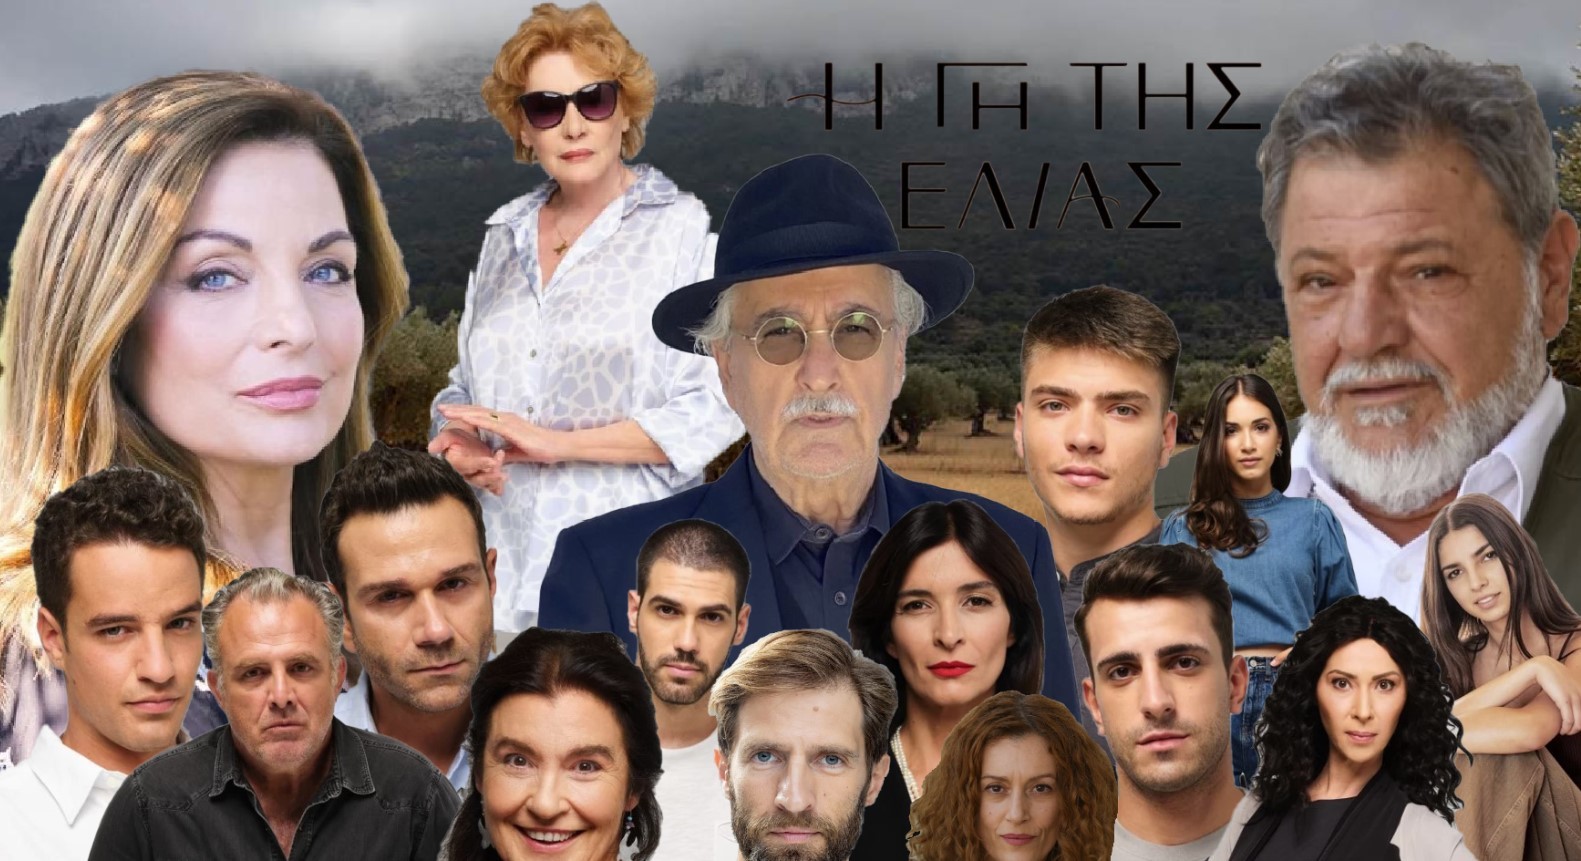 “Η Γη της Ελιάς”: Νυχτοπερπατήματα για τους ηθοποιούς της σειράς!